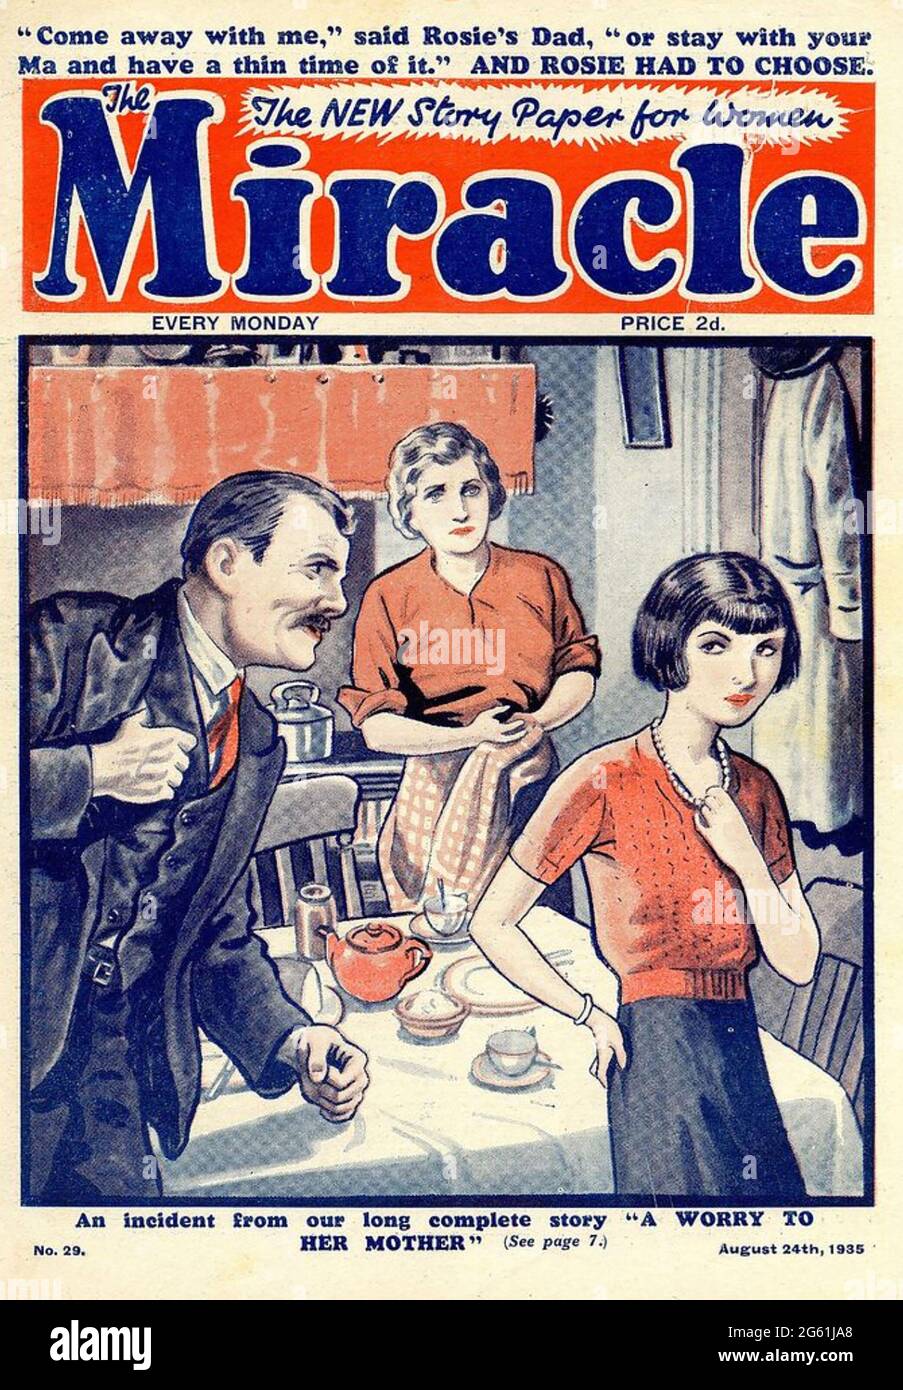 EL MILAGRO desaparecida revista mensual inglesa. Edición de agosto de 1935 Foto de stock